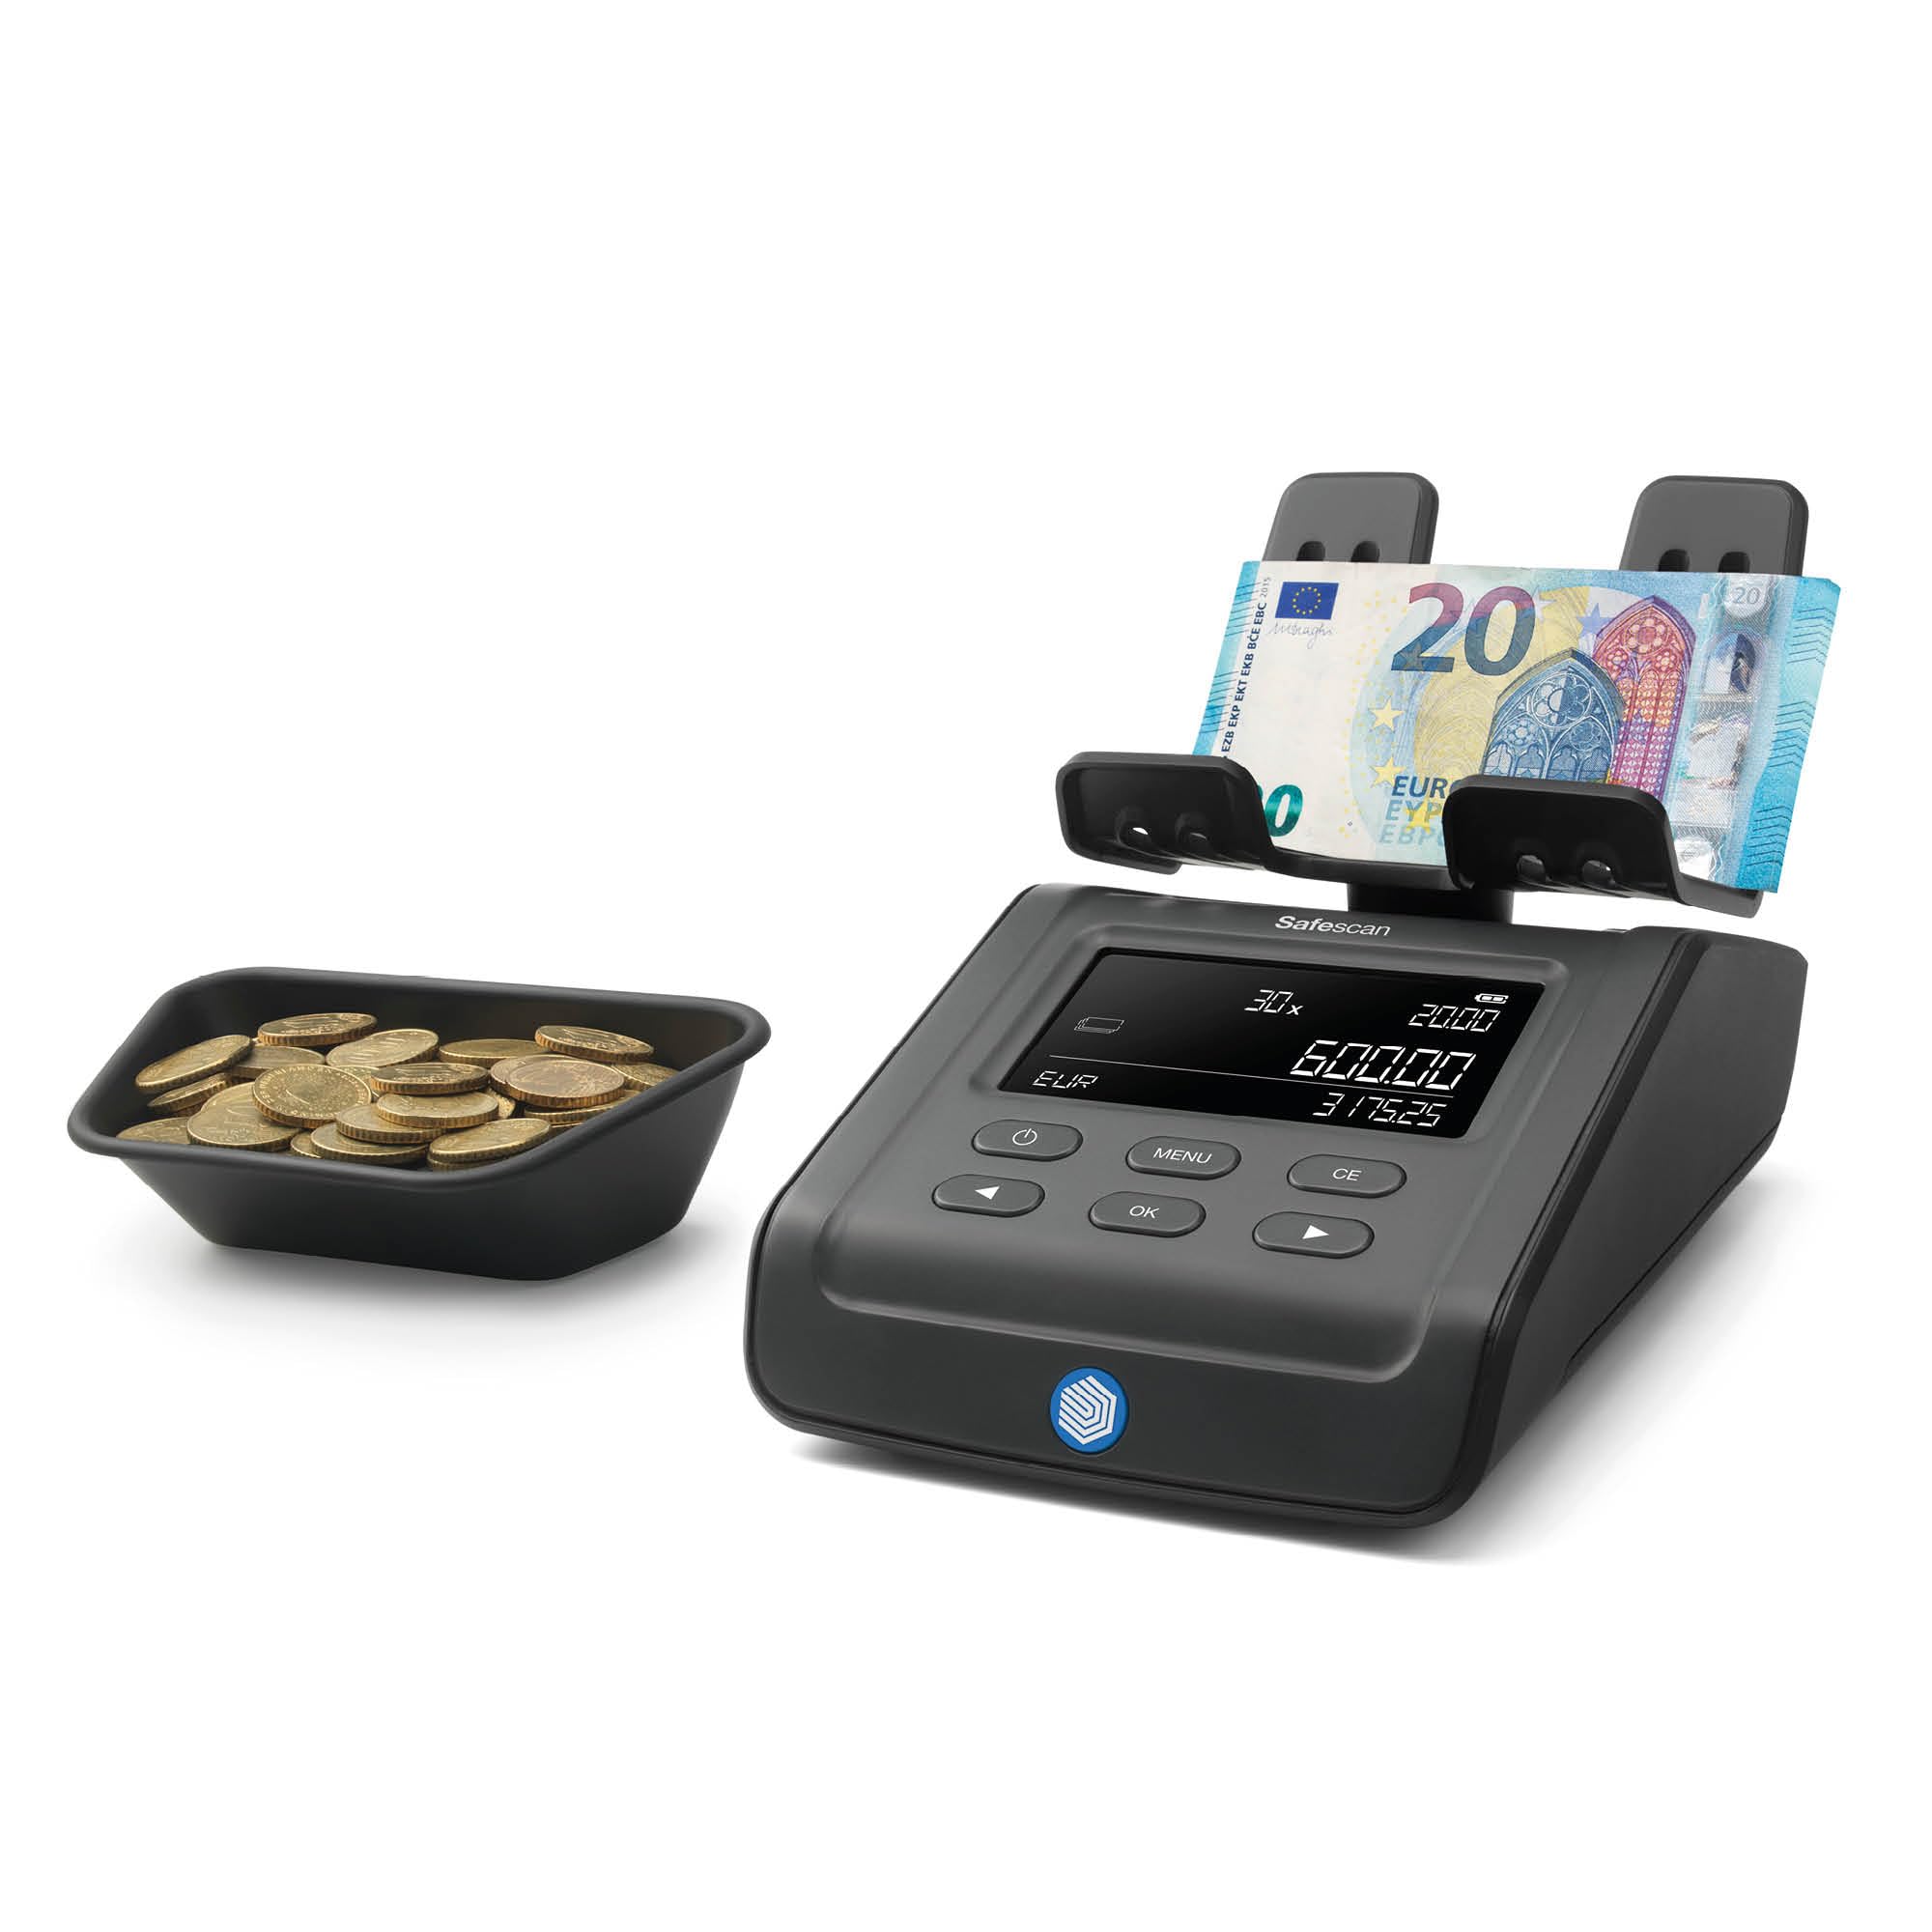 Safescan 6165 Geldzählmaschine, Wertzählung für Münzen und Banknoten - Münzzähler mit automatischer Münzrollenerkennung - Geldwaage für schnelles und einfaches Zählen von Kassenladen